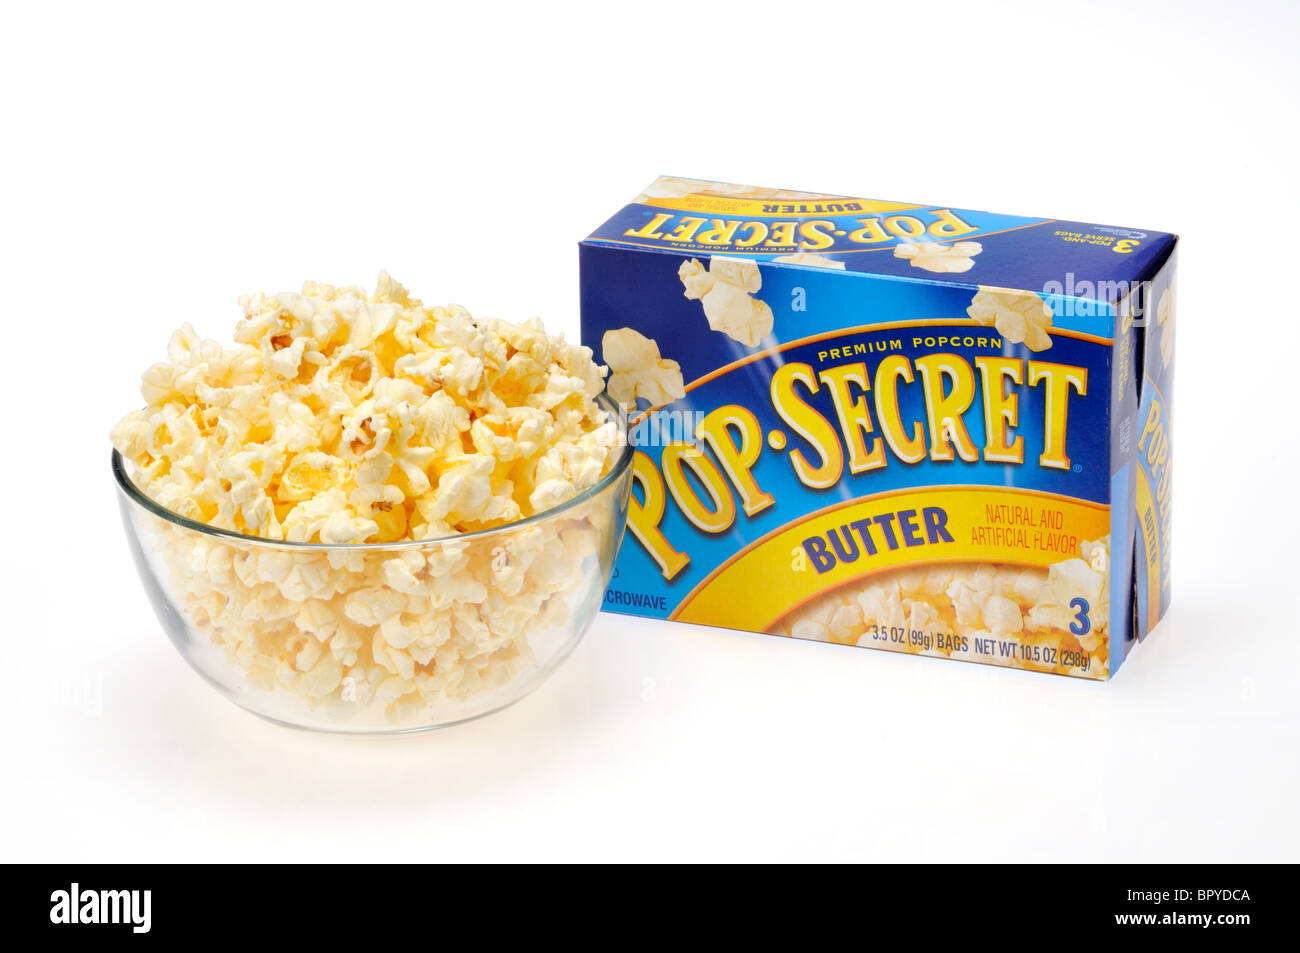 Un bol en verre rempli de popcorn micro-ondes une boîte de pop-corn secret derrière elle sur fond blanc, cut out. Banque D'Images